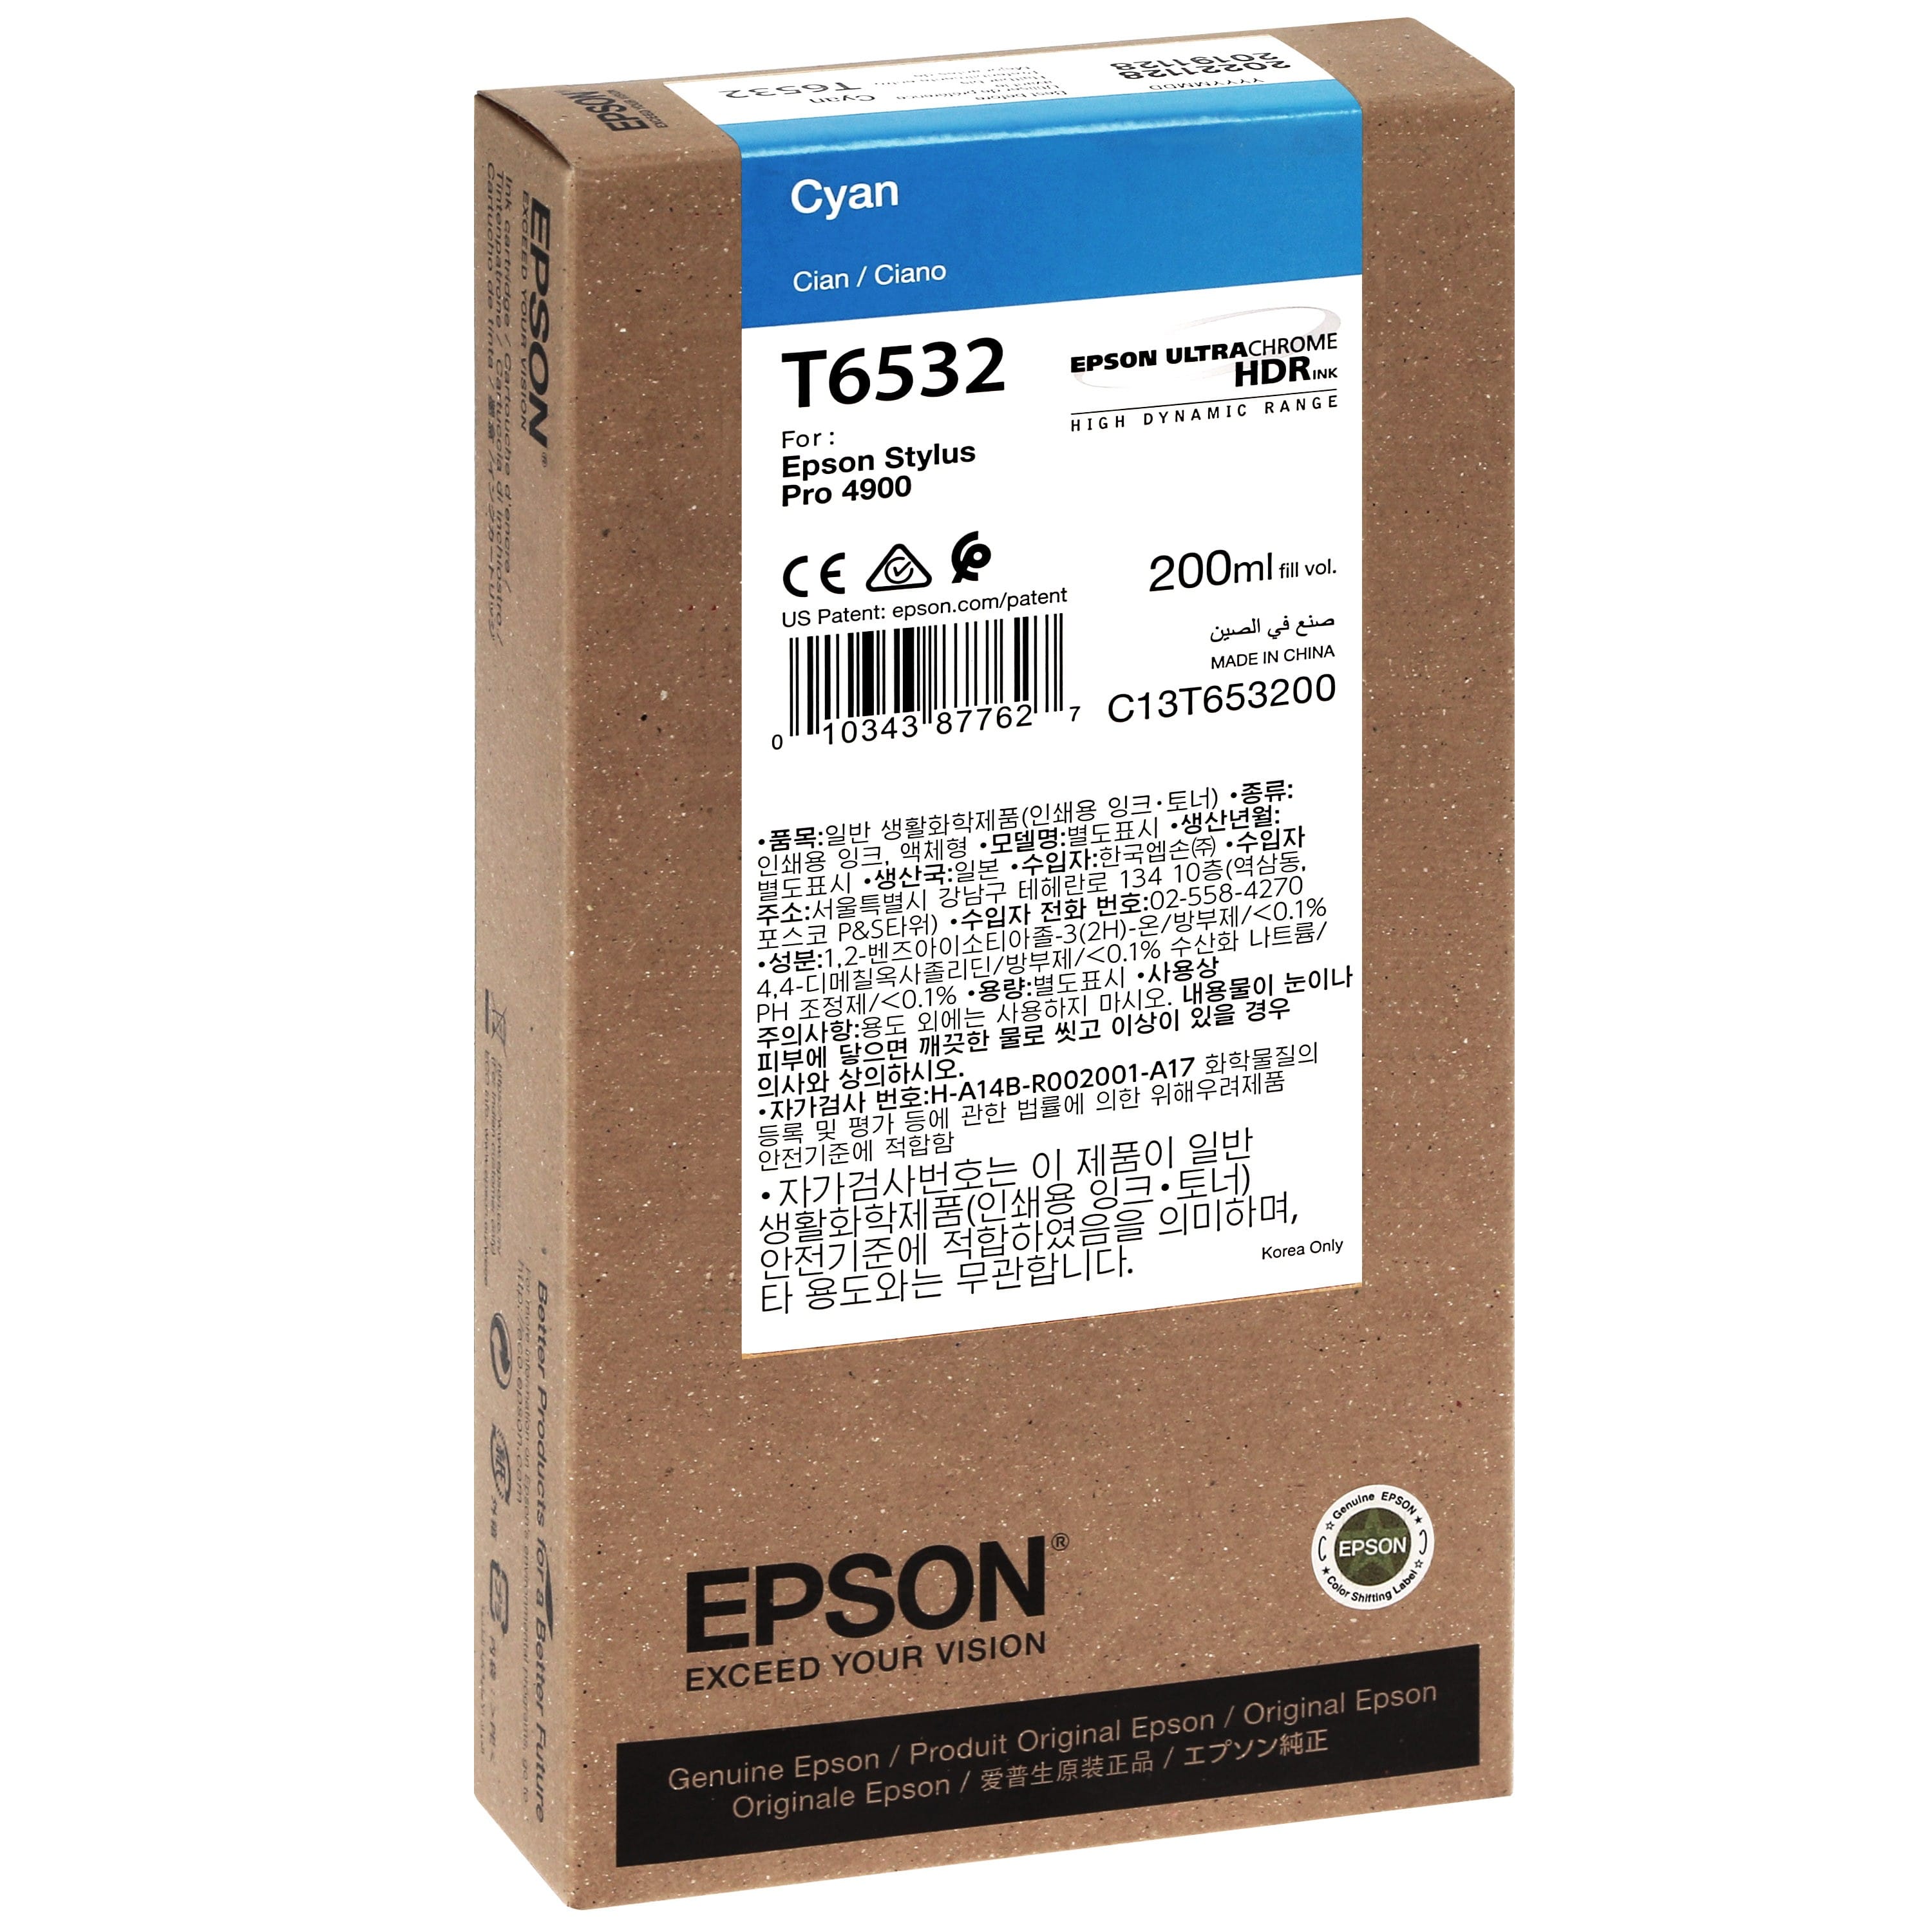 EPSON - Cartouche d'encre traceur T6532 Pour imprimante 4900 Cyan - 200ml